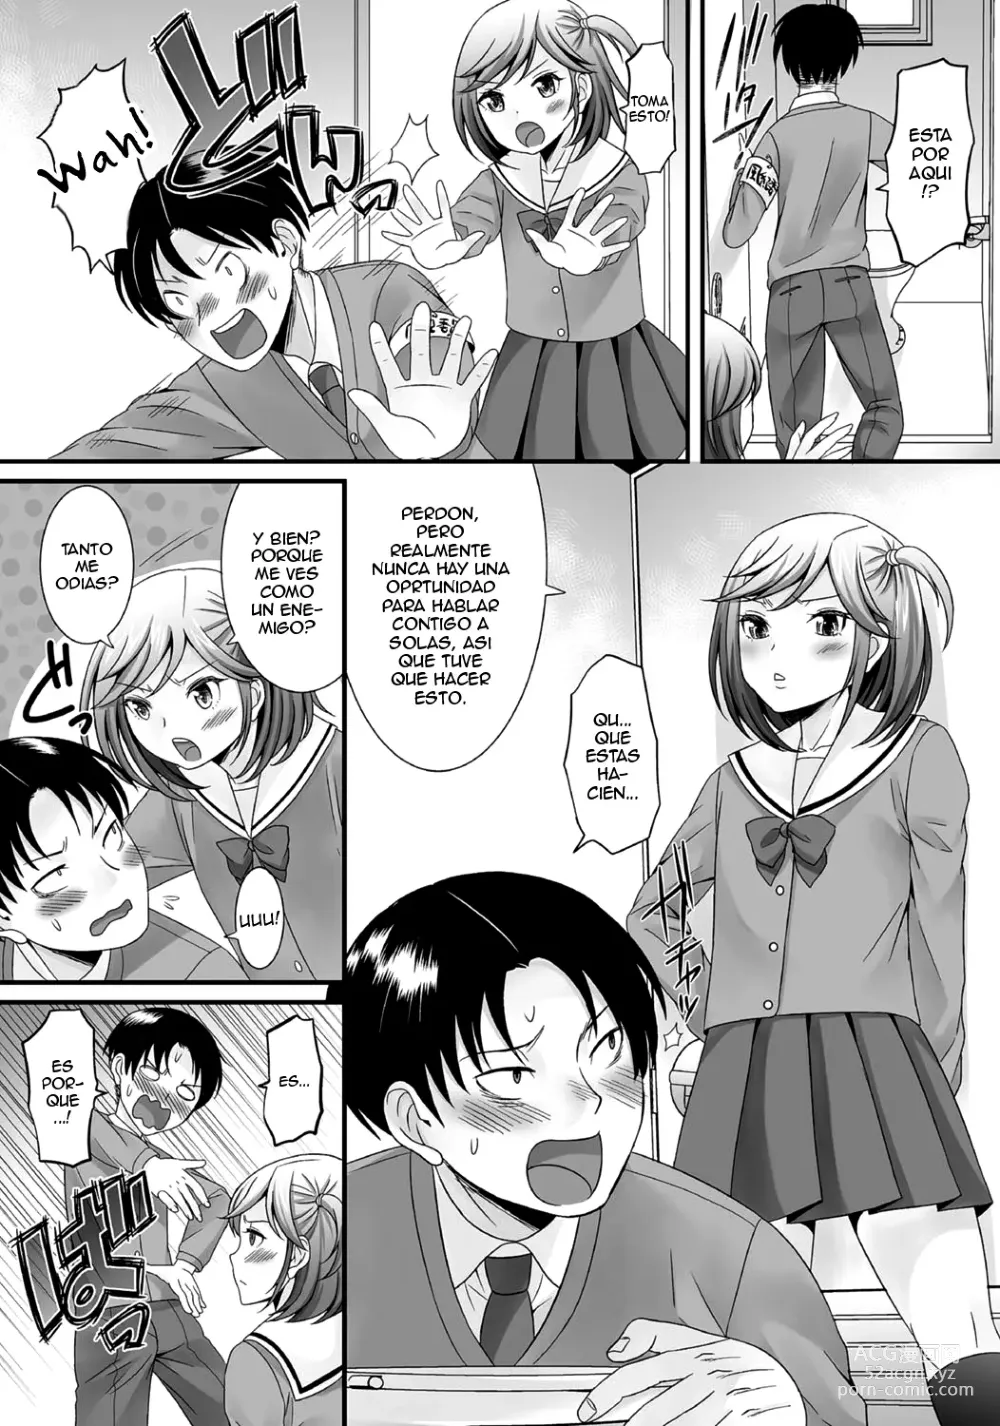 Page 25 of manga Gekkan Web Otoko no Ko-llection! S Vol. 06